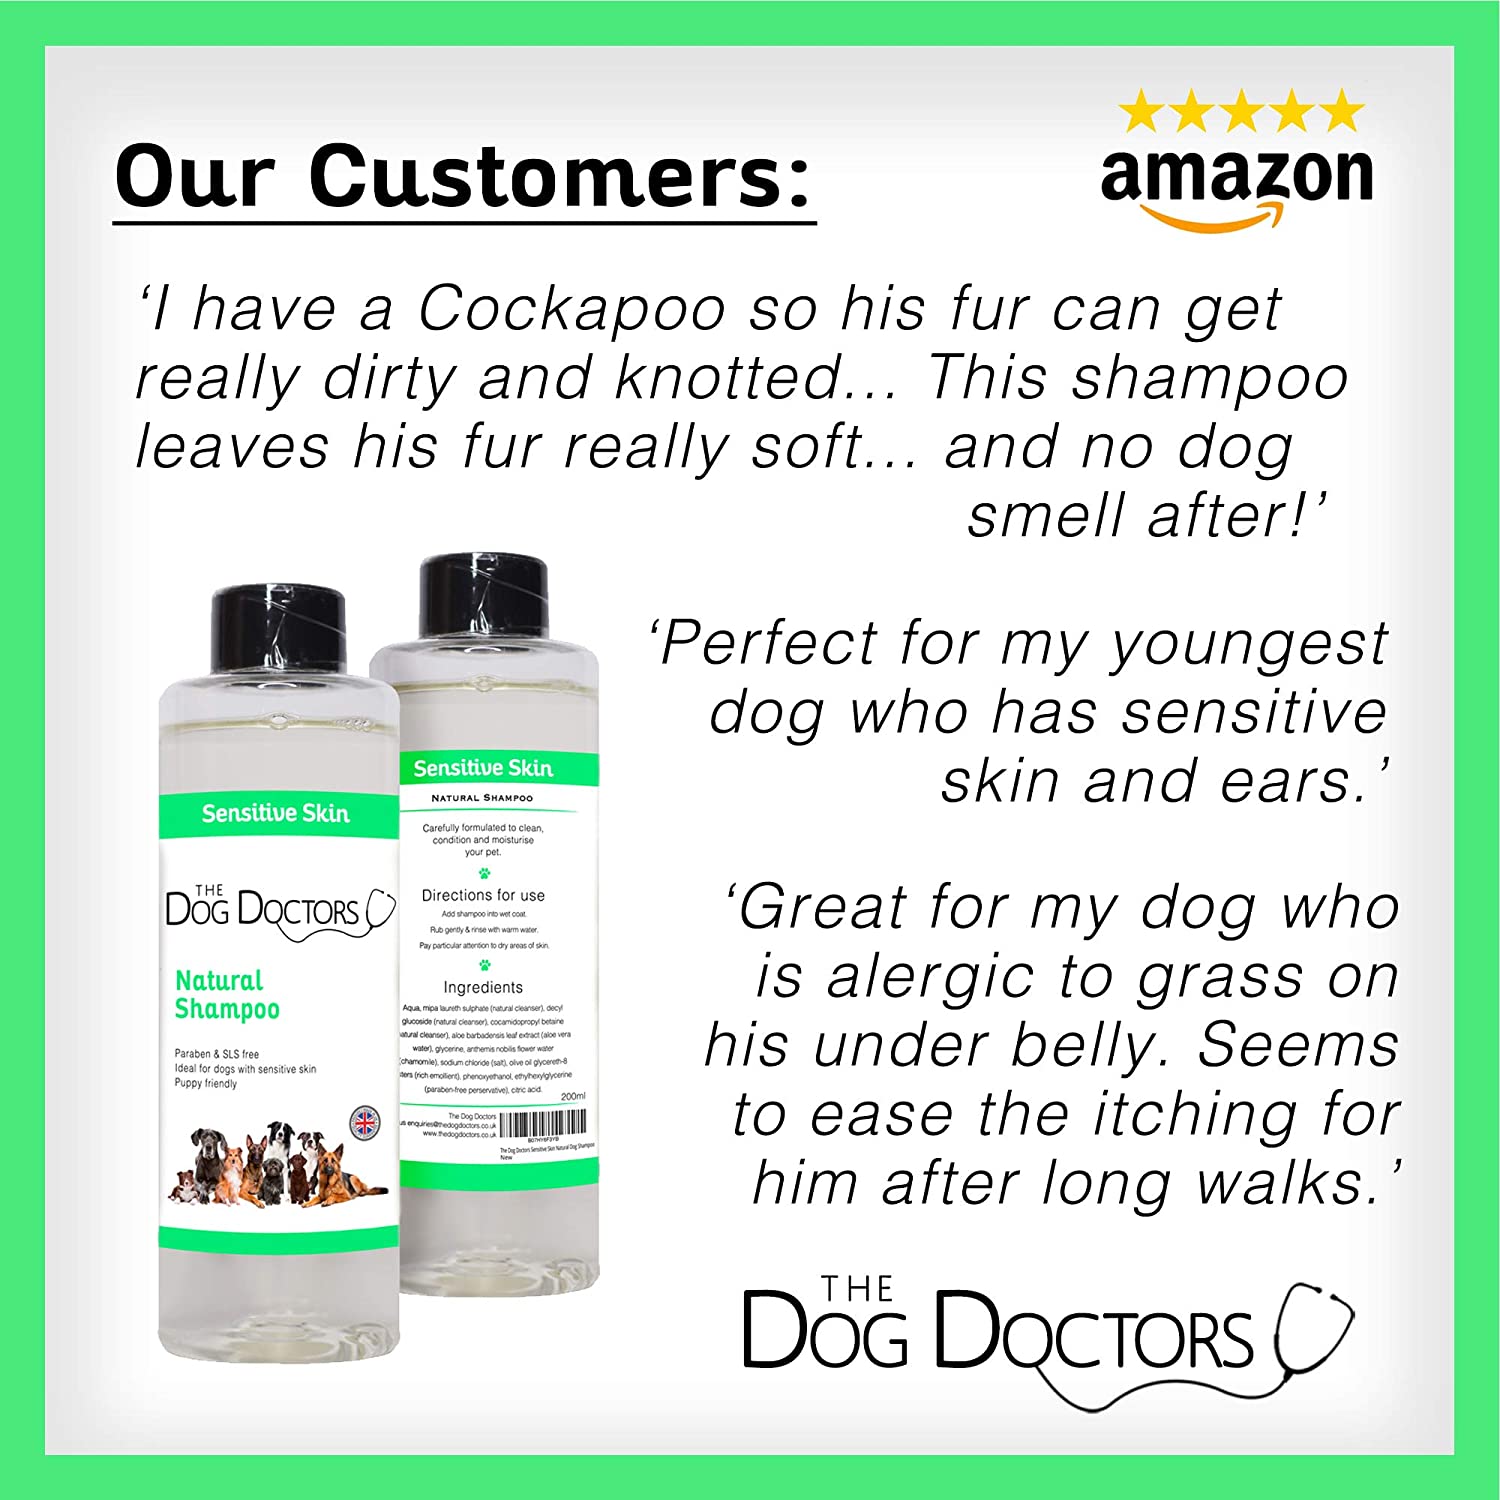  The Dog Doctors - Champú natural, ideal para cachorros o perros con piel sensible o con picor. Libre de Parabenos y Libre de Maltrato. Fabricado en el Reino Unido. 